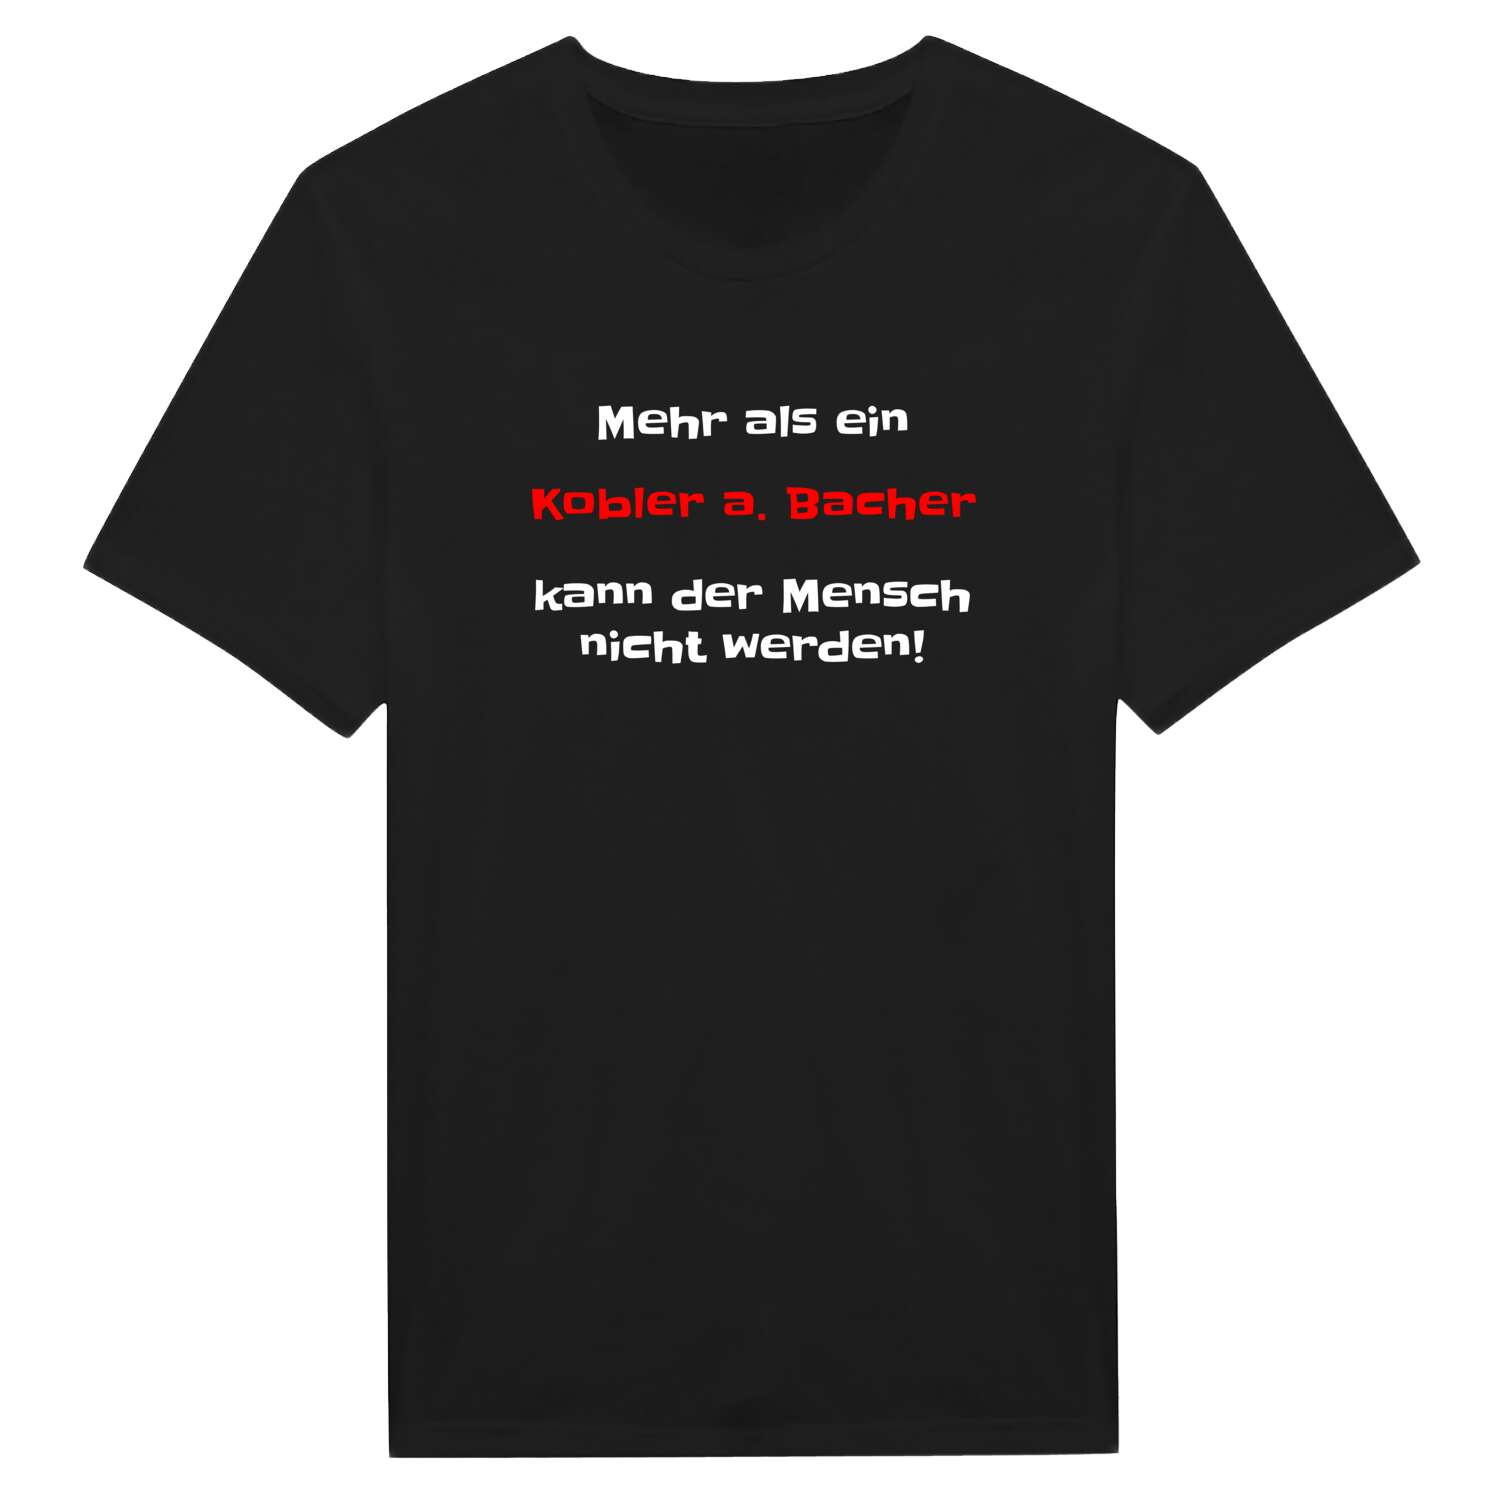 Kobler a. Bach T-Shirt »Mehr als ein«